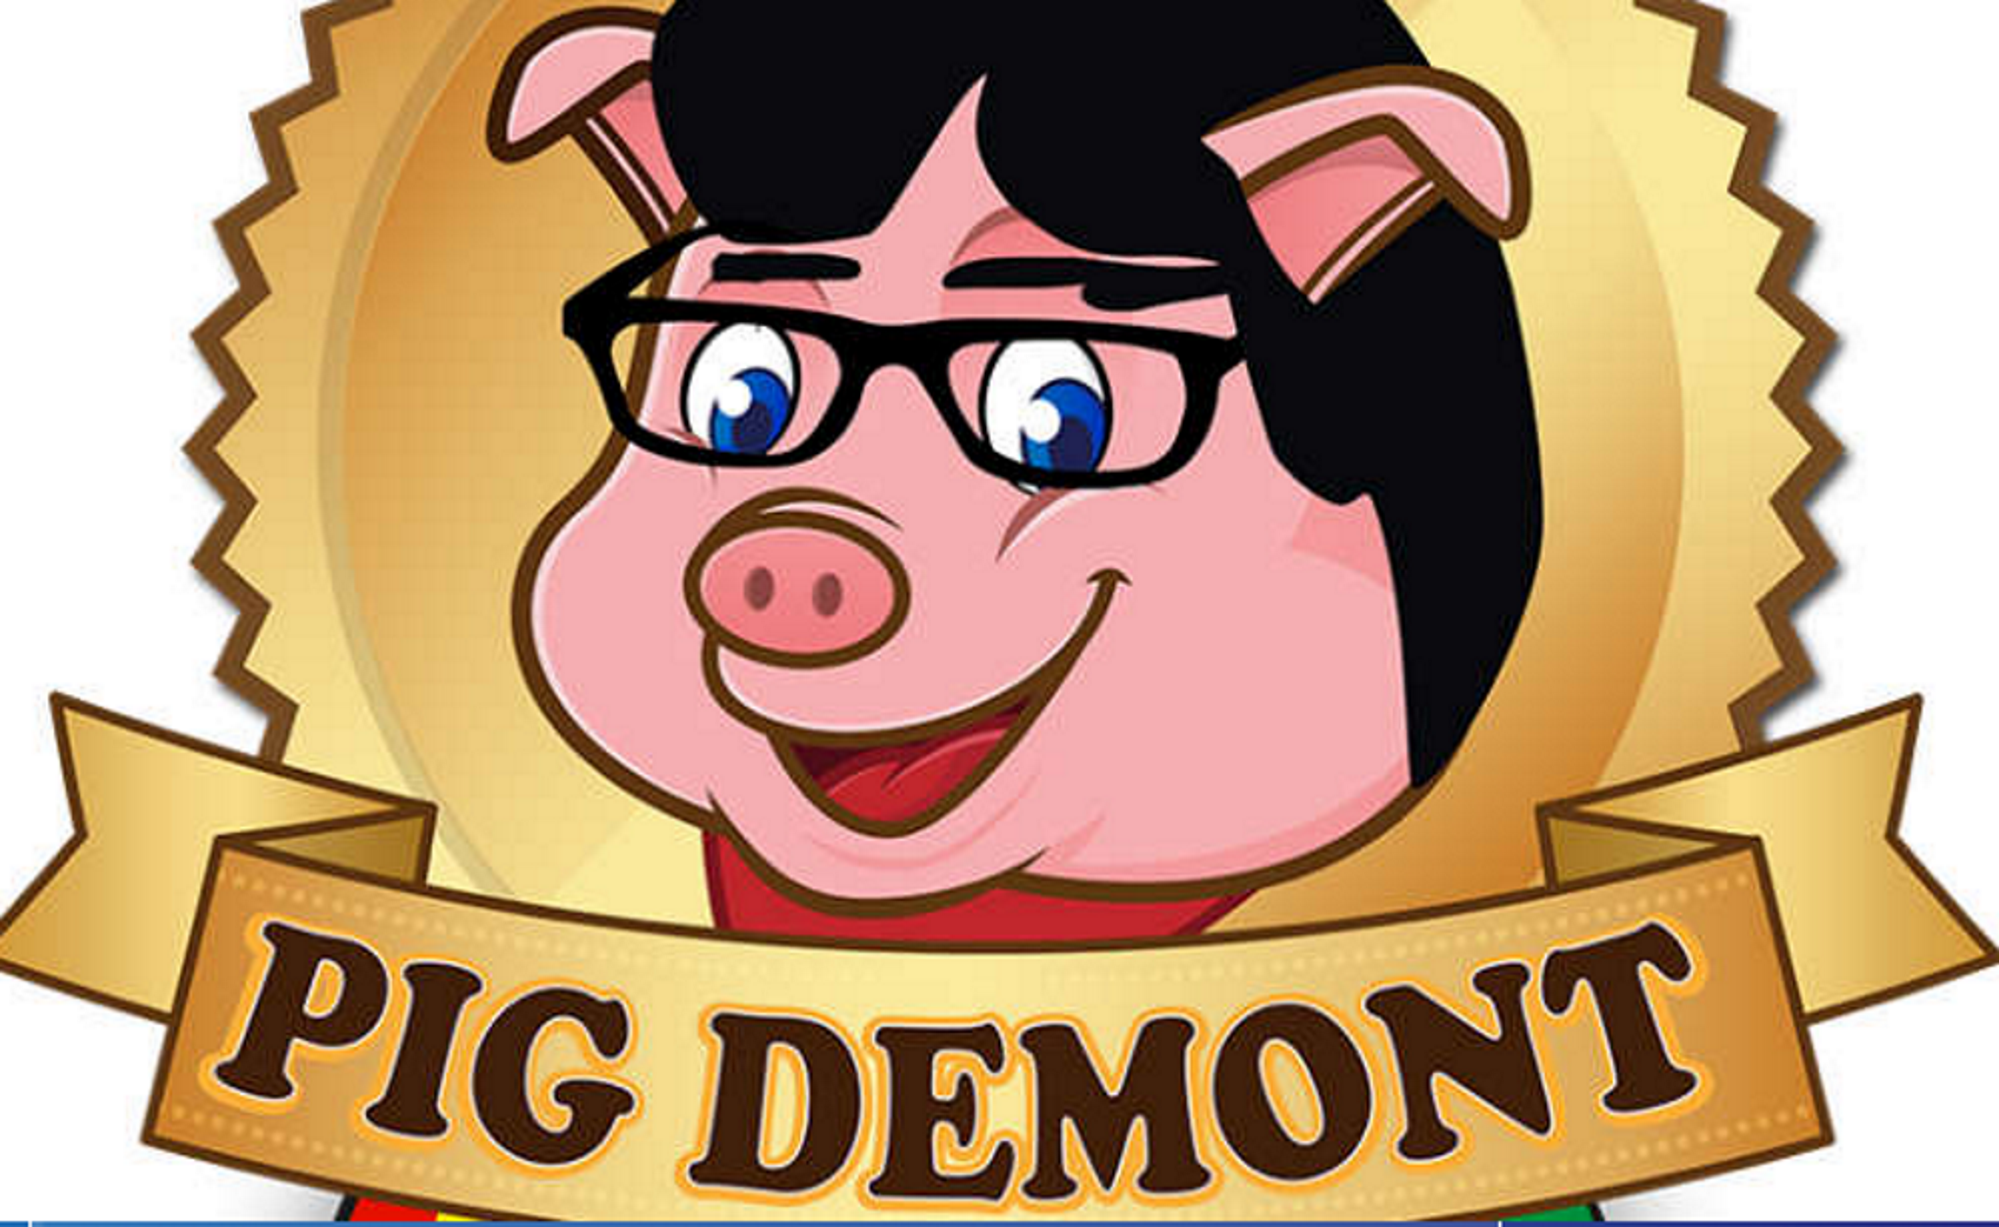 Puigdemont denuncia una botiga que denigra el seu cognom i l'identifica amb un porc